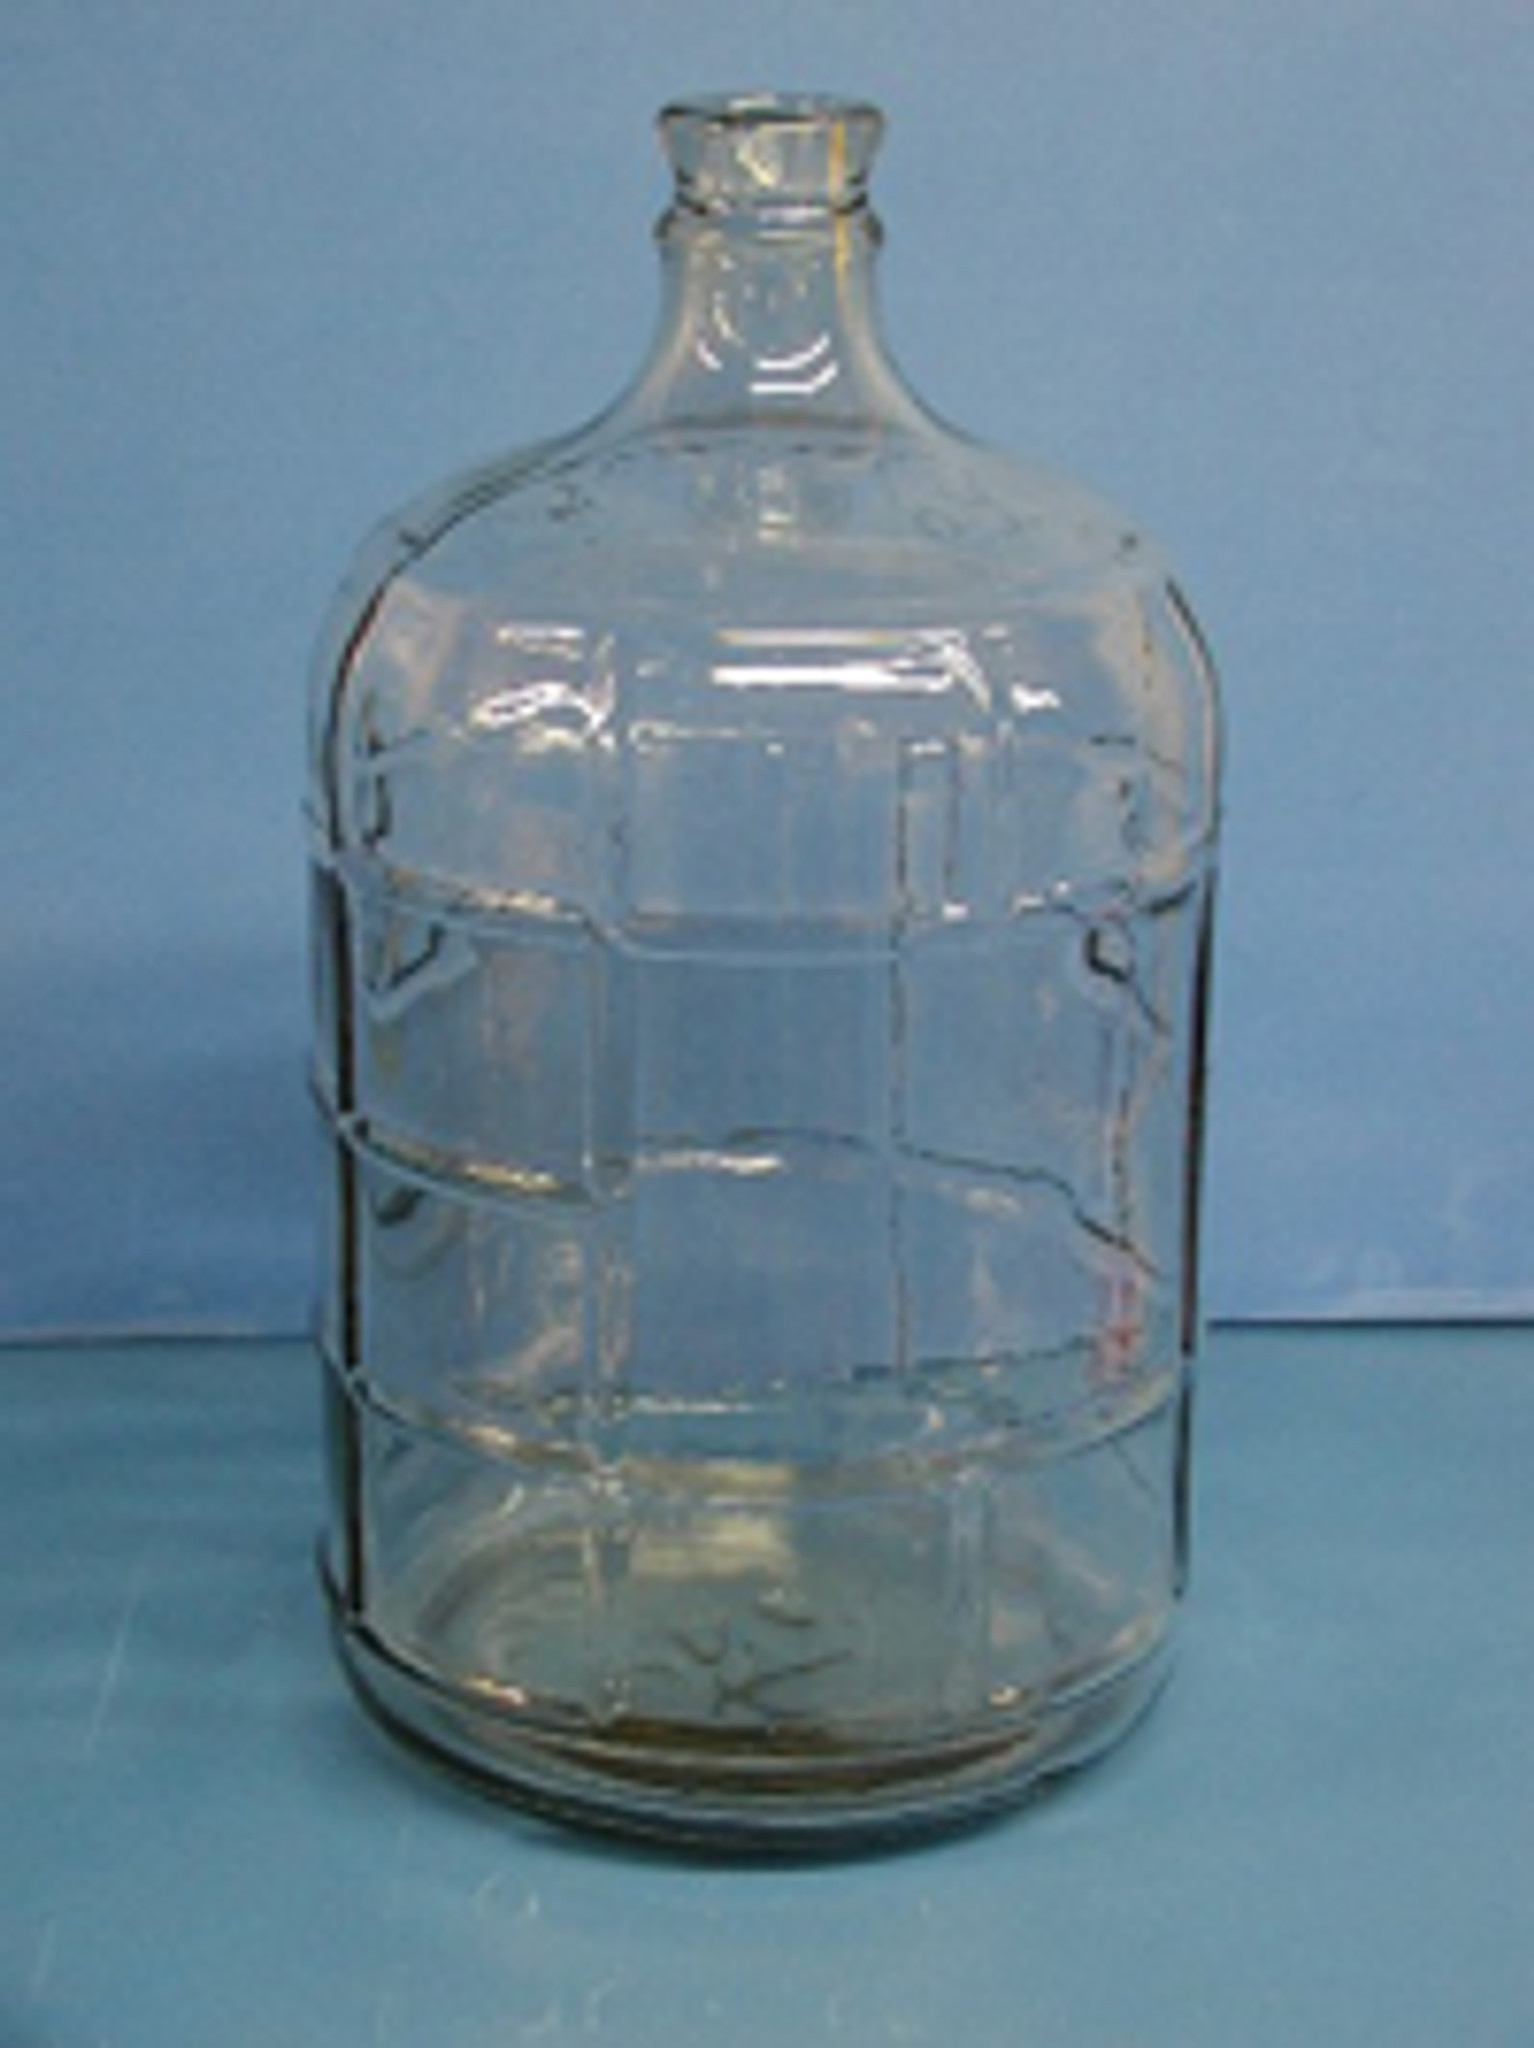 Small-Batch Fermentation Carboy: 1 Gallon Glass Jug